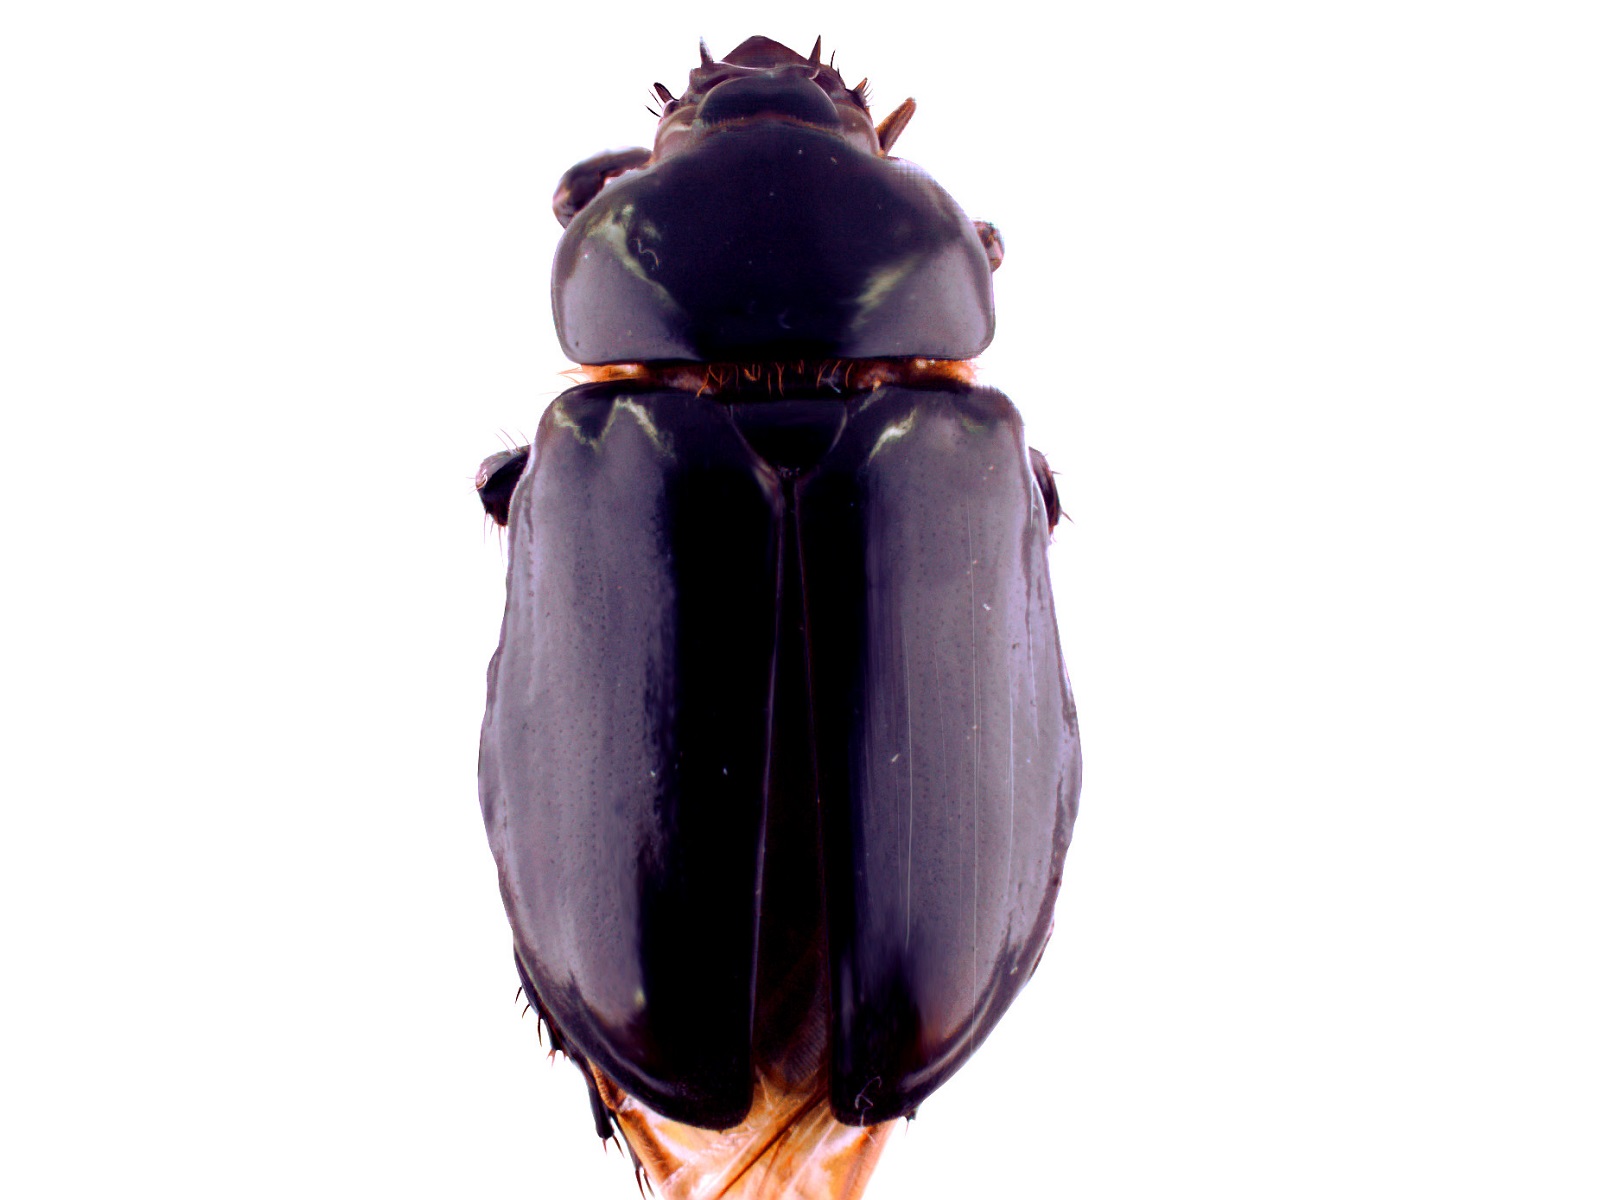 Ancognatha scarabaeoides Erichson, 1847 